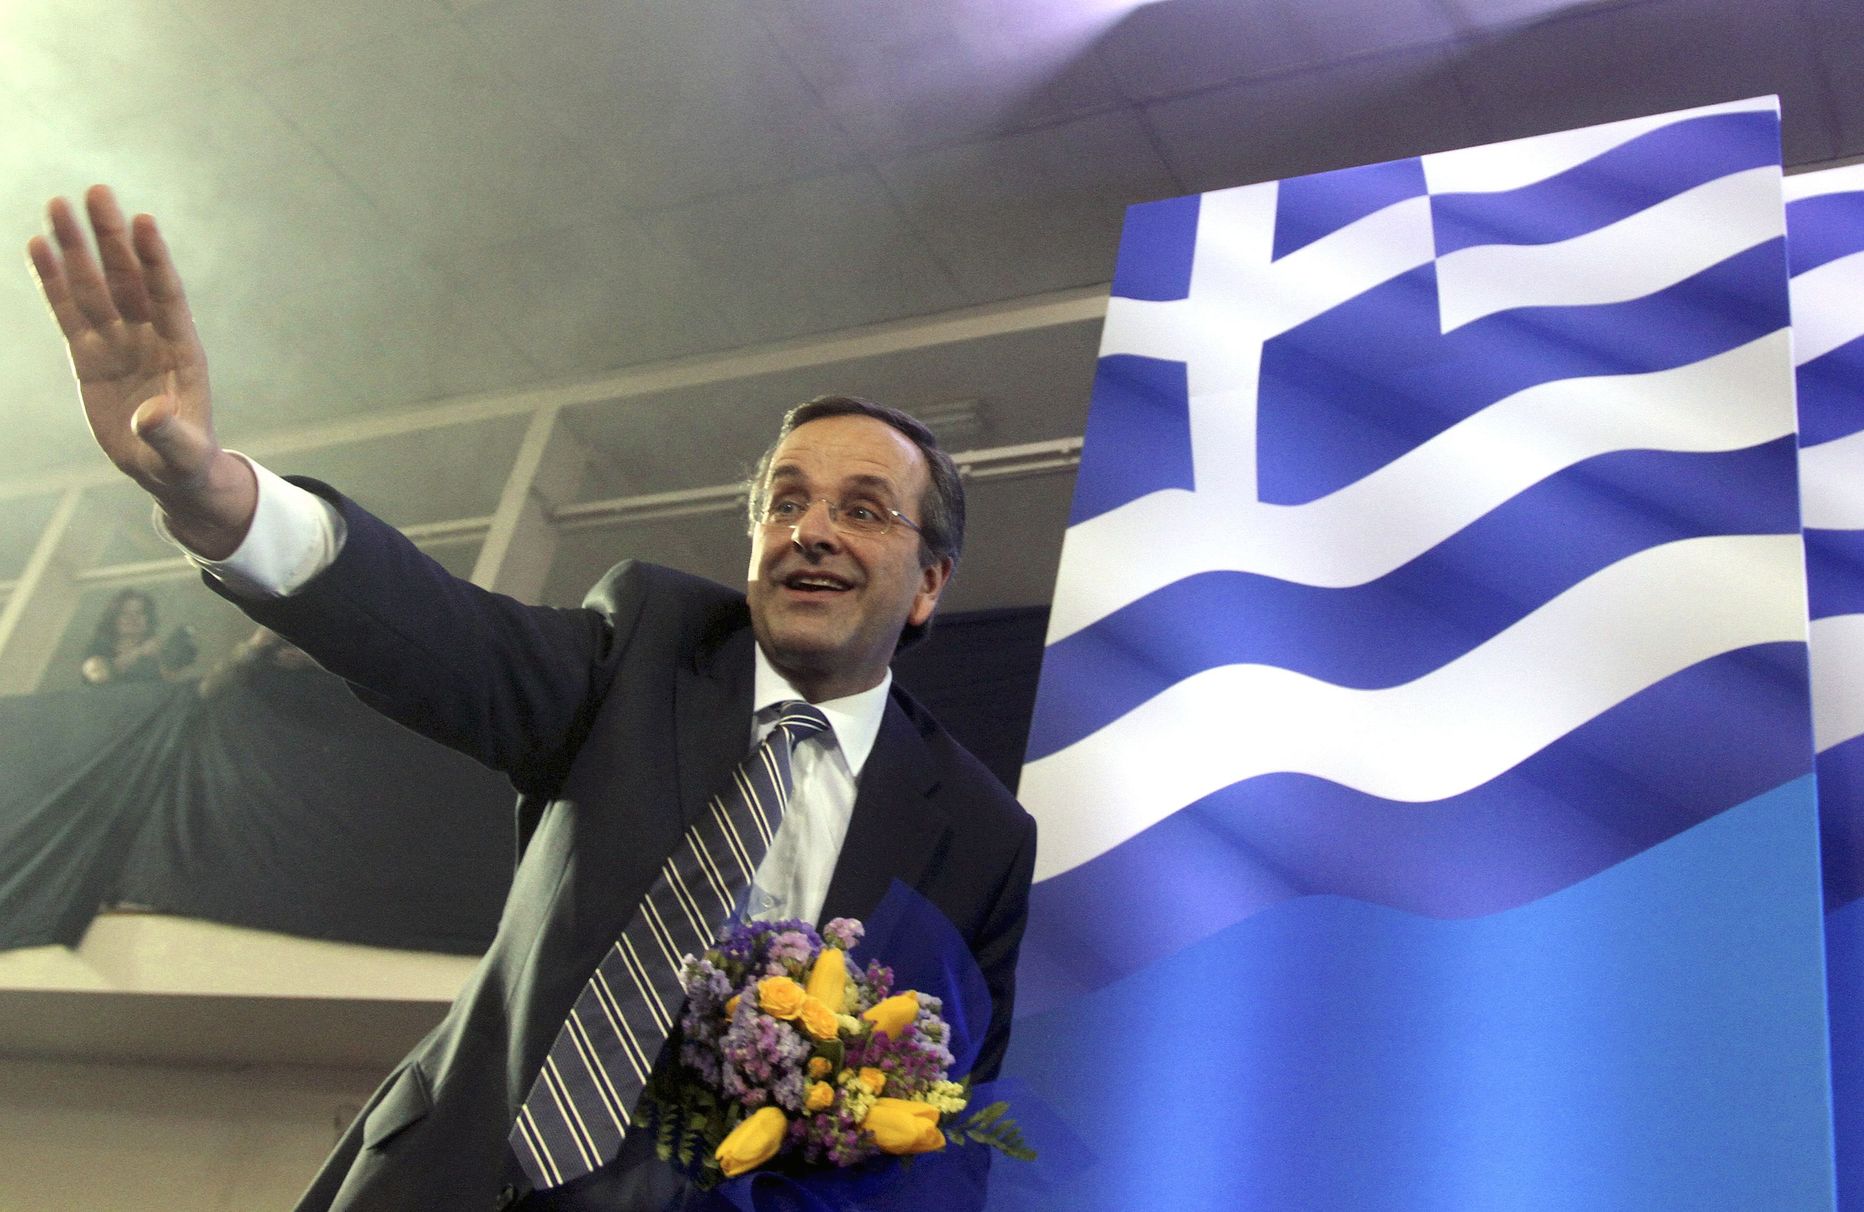 Kreeka konservatiivse erakonna juht Antonis Samaras.